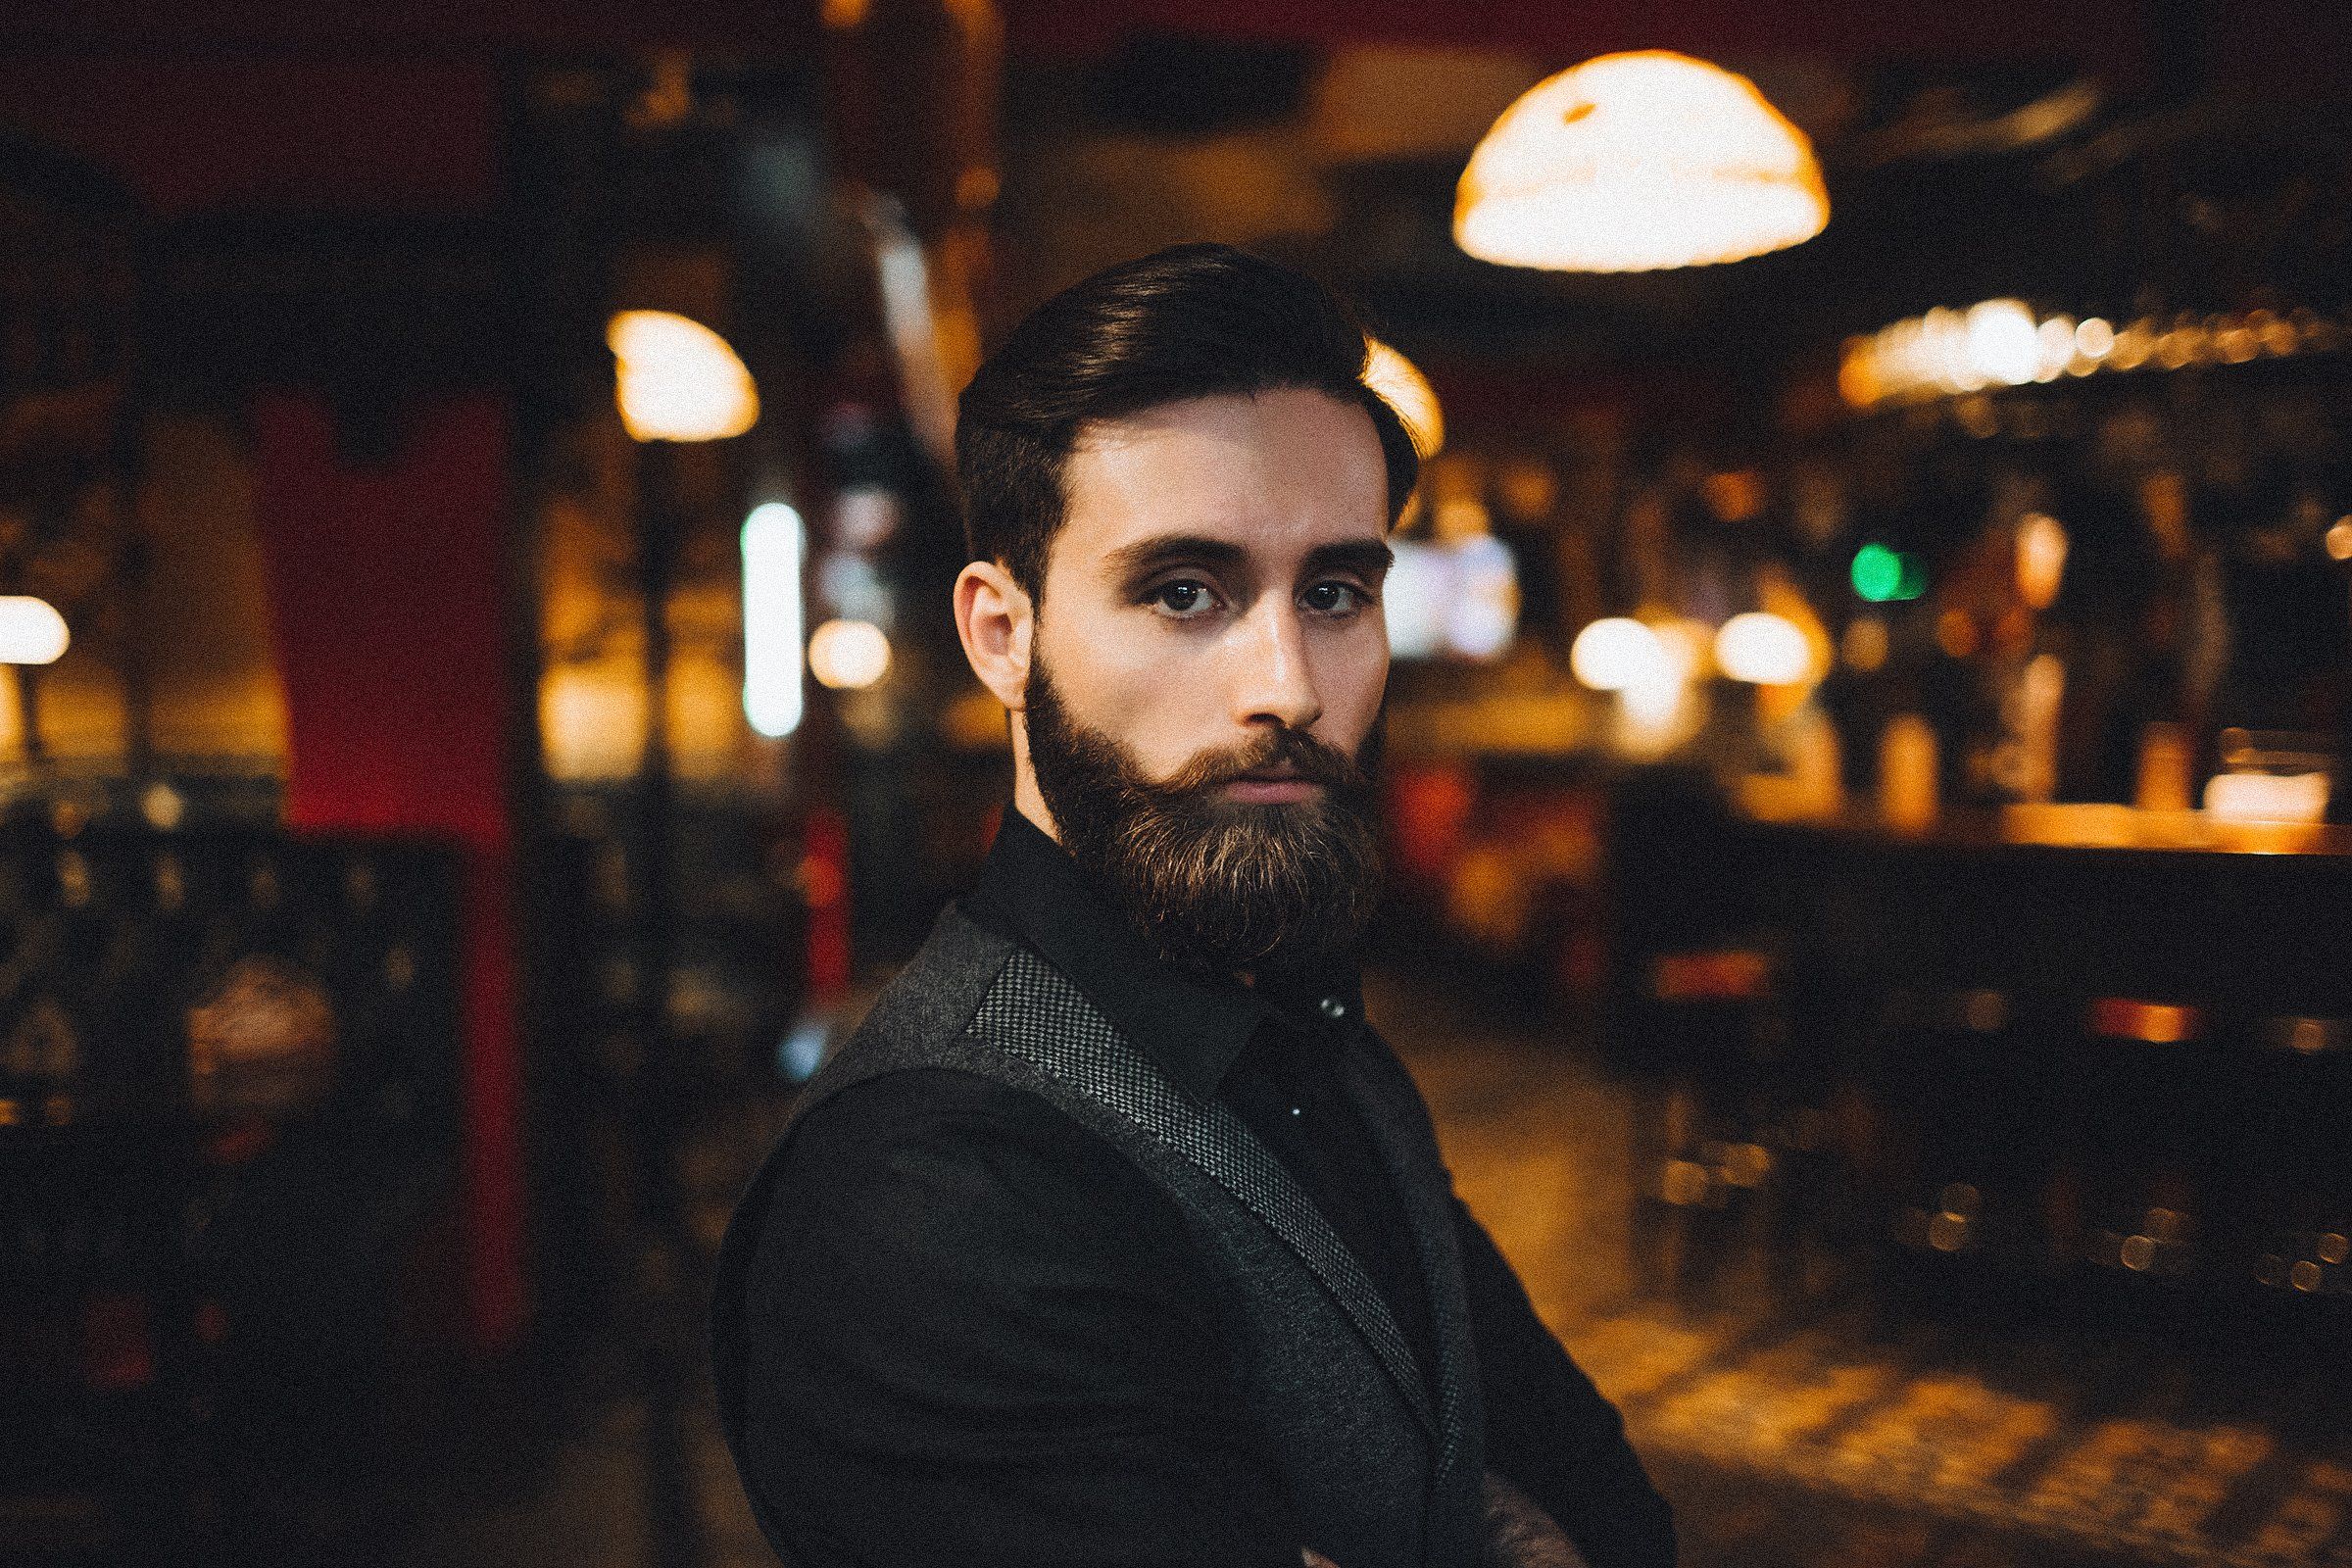 борода, паб, мужской портрет, бородач, Алексей Новопашин